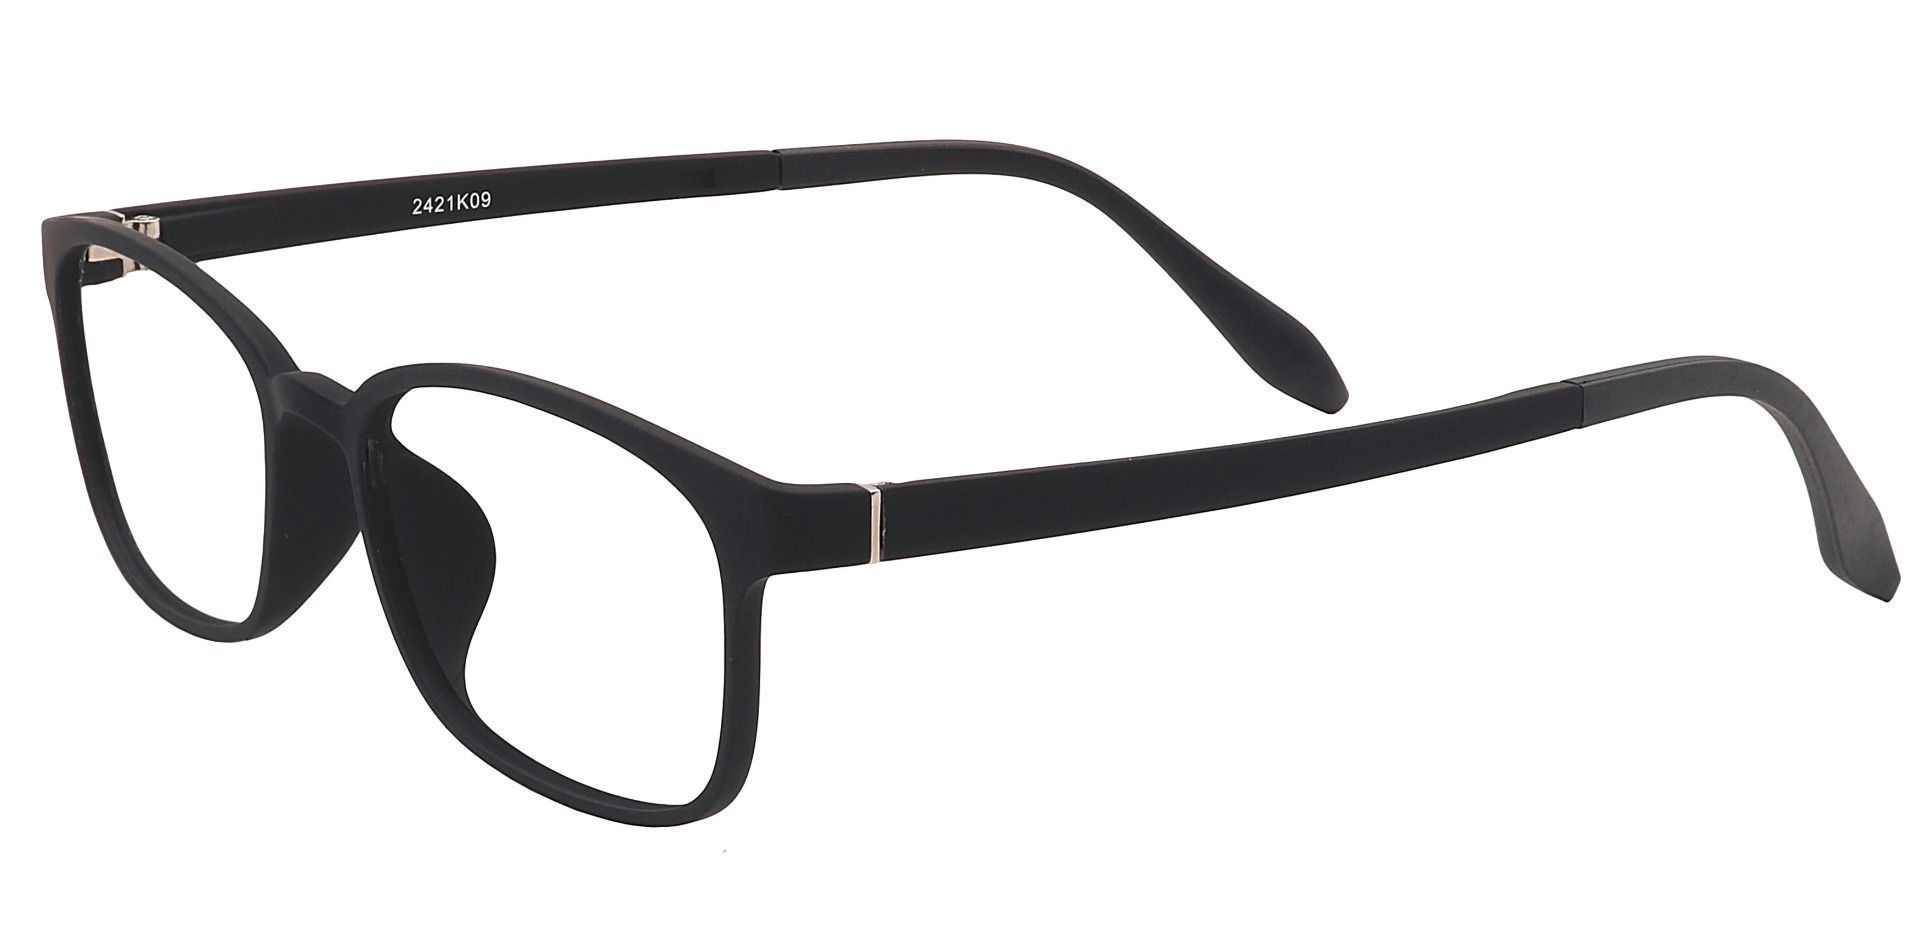 Mercer Rectangle Prescription Glasses - Matte Black